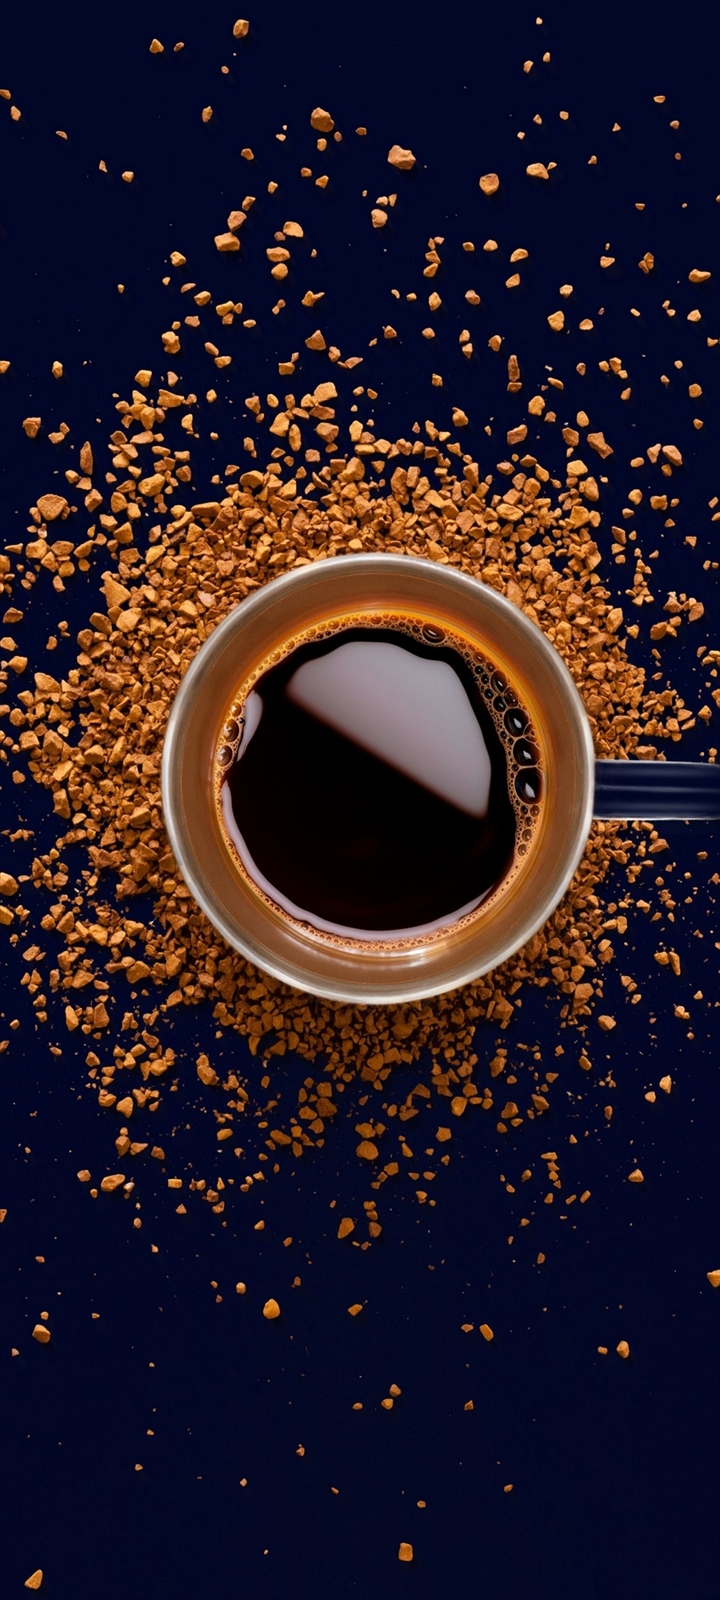 コーヒーと茶色いコーヒー豆 Moto G9 Play Androidスマホ壁紙 待ち受け スマラン